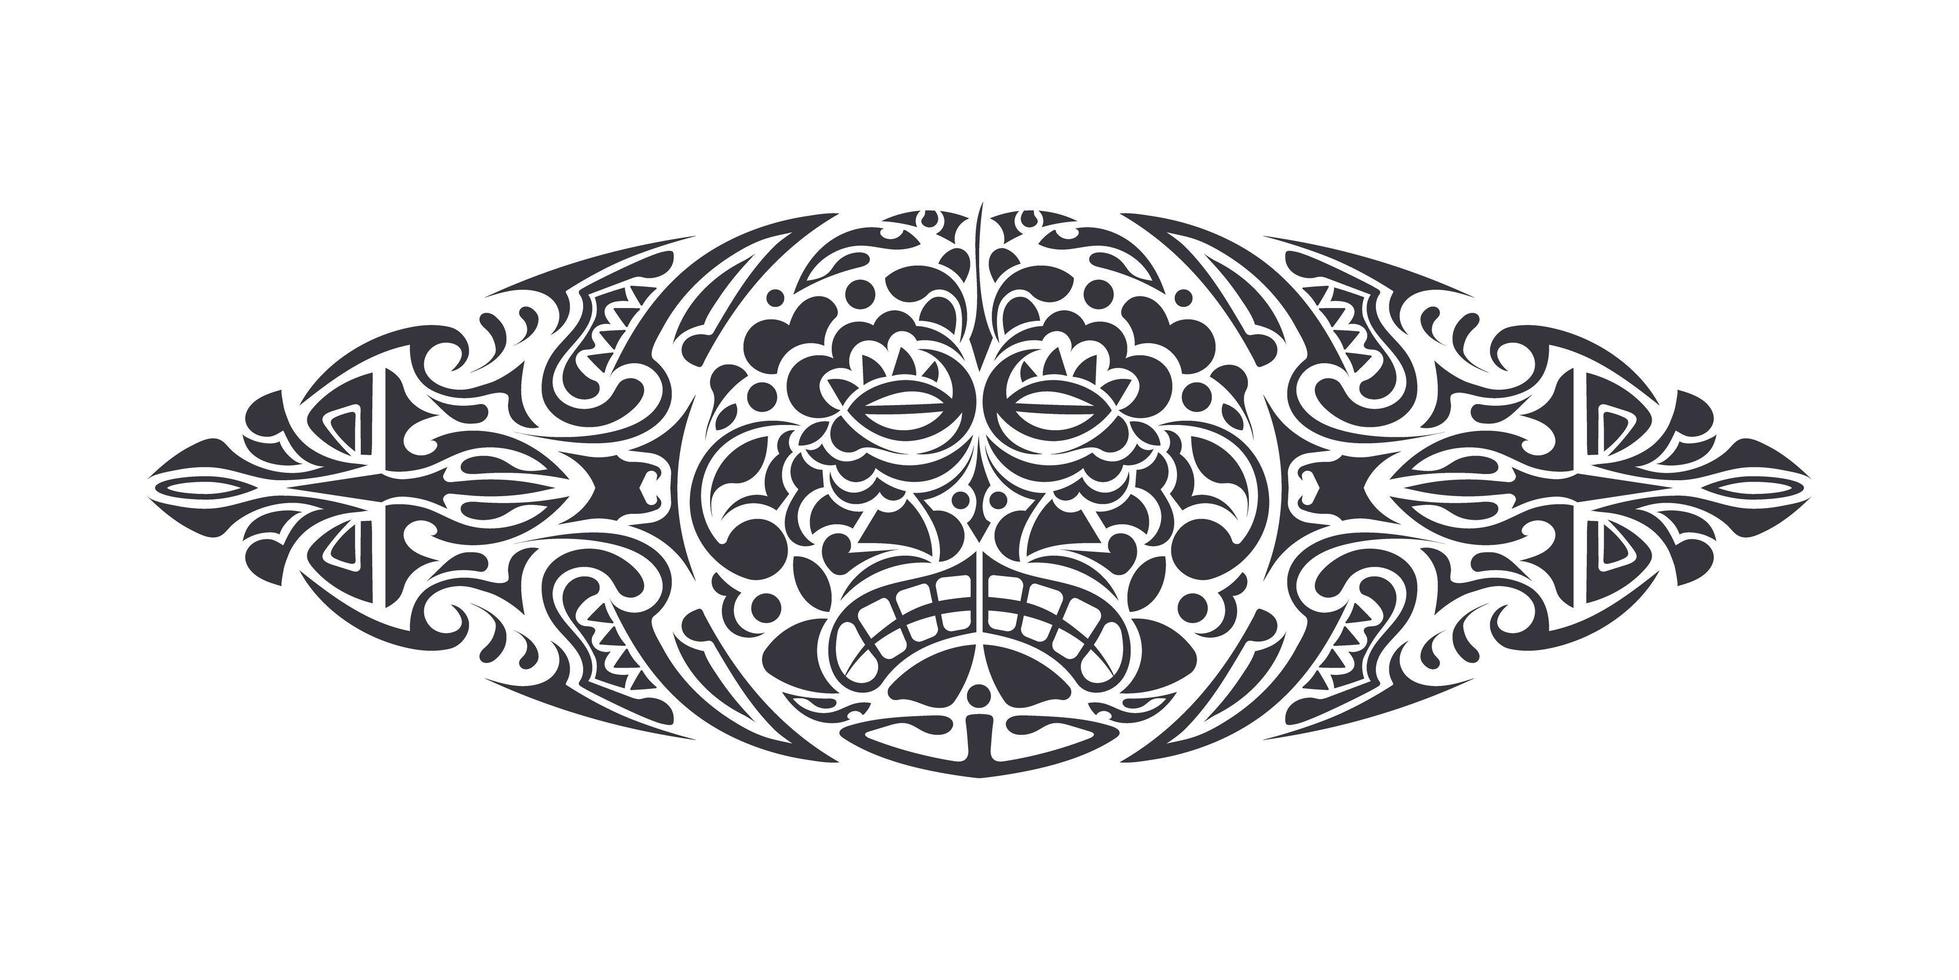 Tätowierungen im hawaiianischen oder polynesischen Stil. gut für Rücken oder Brust. Maske der Götter. traditionelle Stammesverzierung. handgefertigt. Vektor-Illustration. vektor